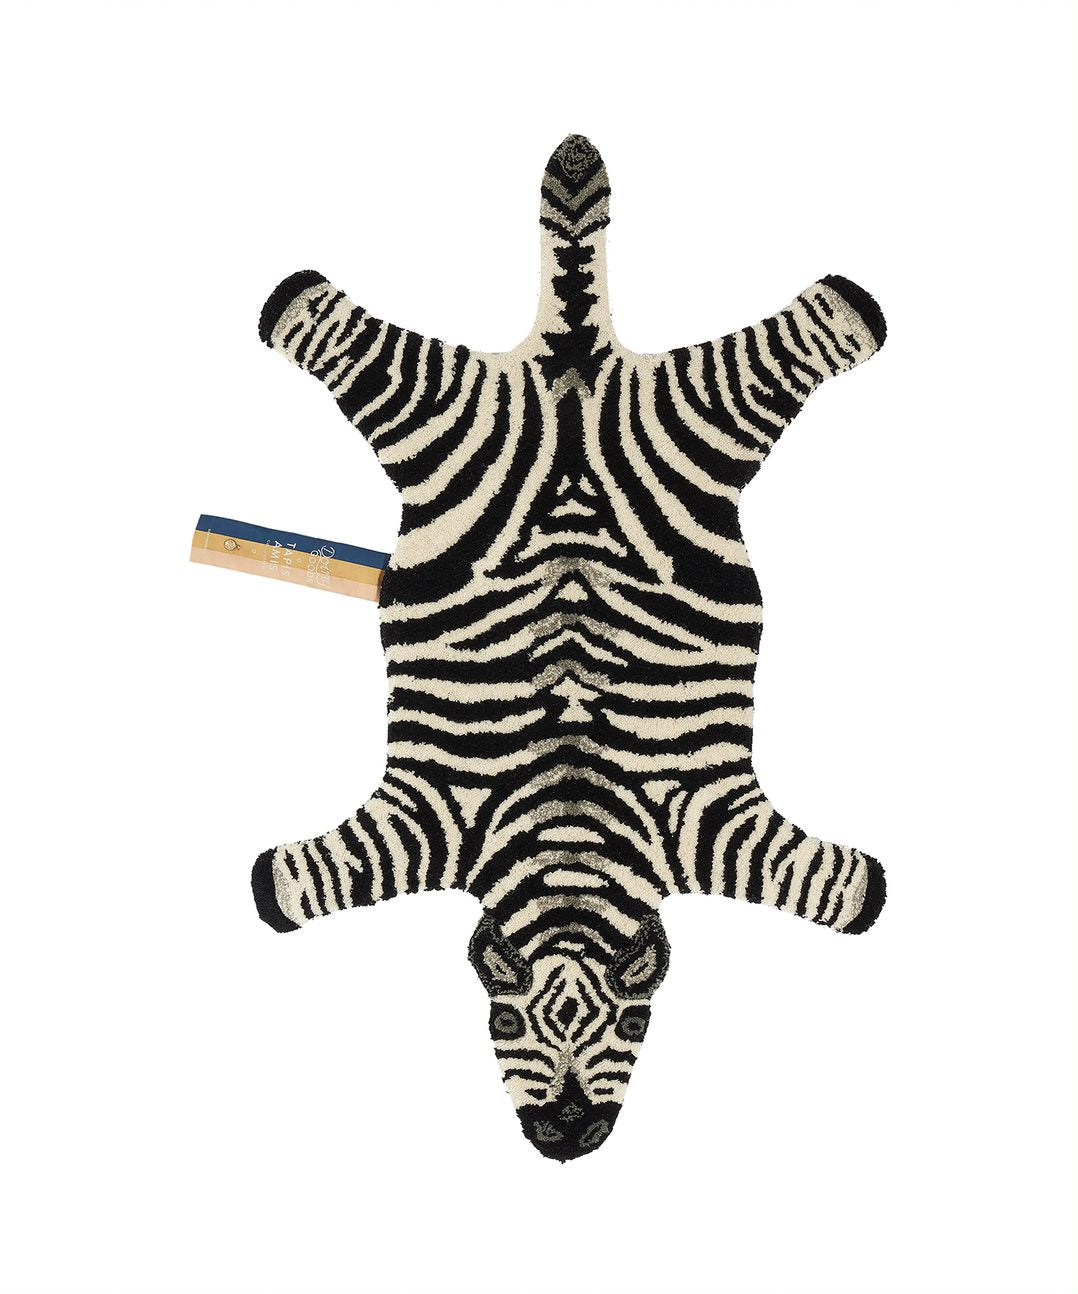 Teppich in Form eines schwarz weiß gestreiften Zebras